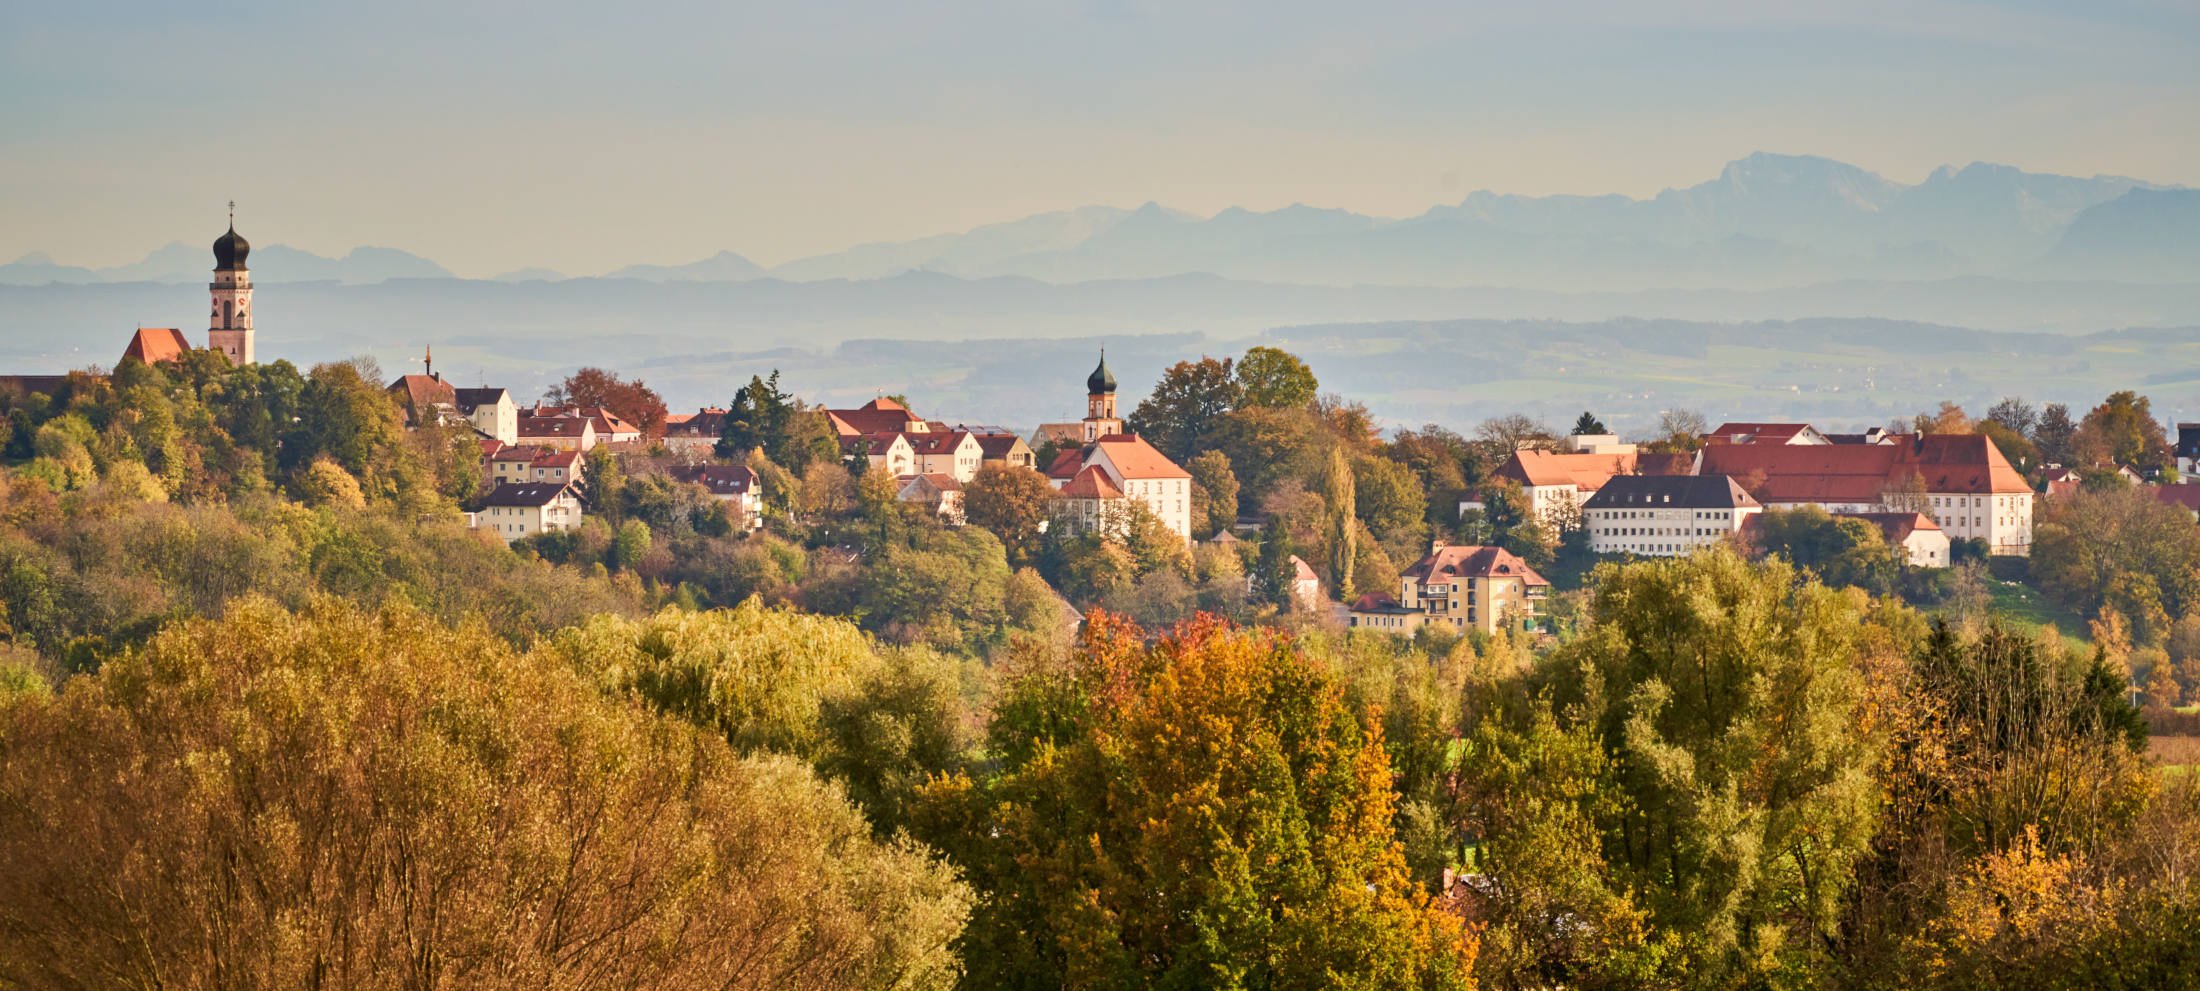 Herbstliche Lanschaft der Stadt Bad Griesbach